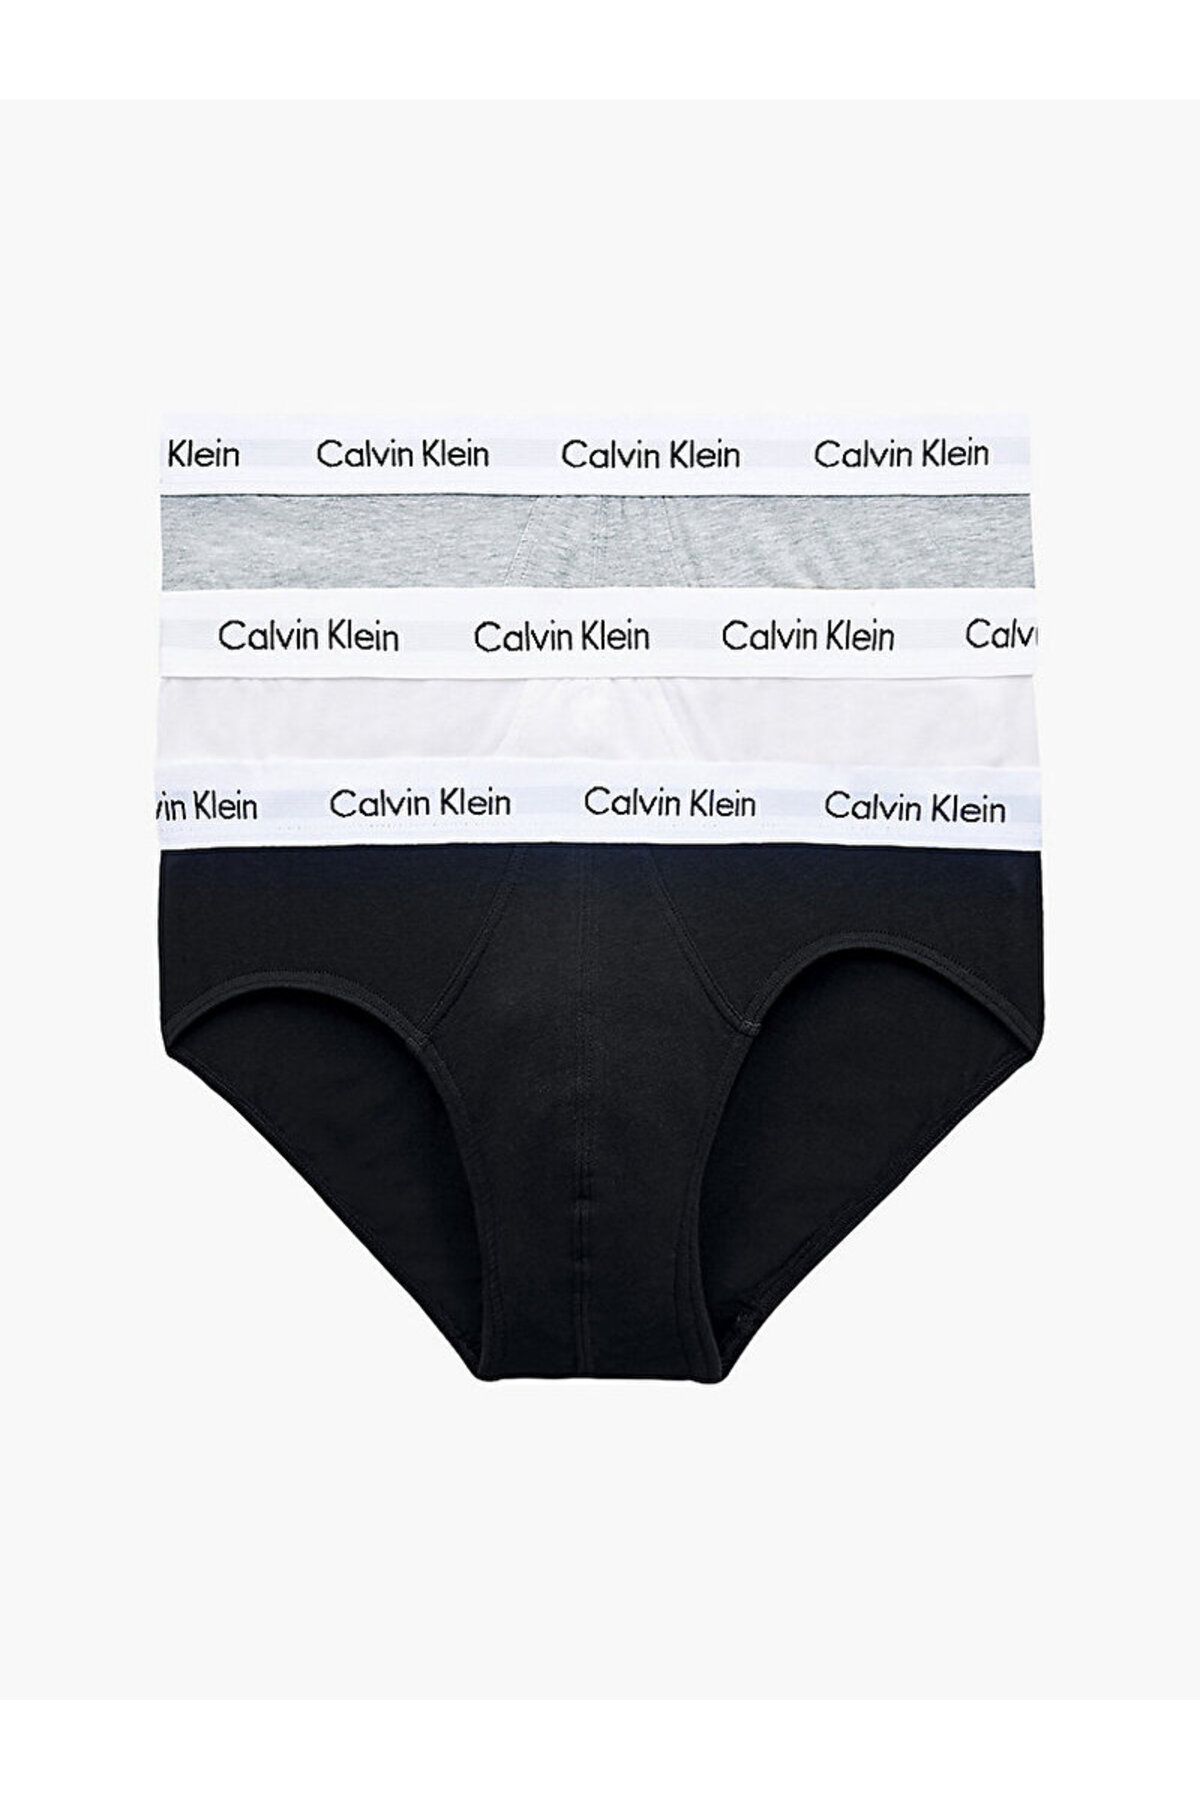 Calvin Klein Erkek Marka Logolu Elastik Bantlı Günlük Kullanıma Uygun Siyah-beyaz-gri Boxer 0000u2661g-998